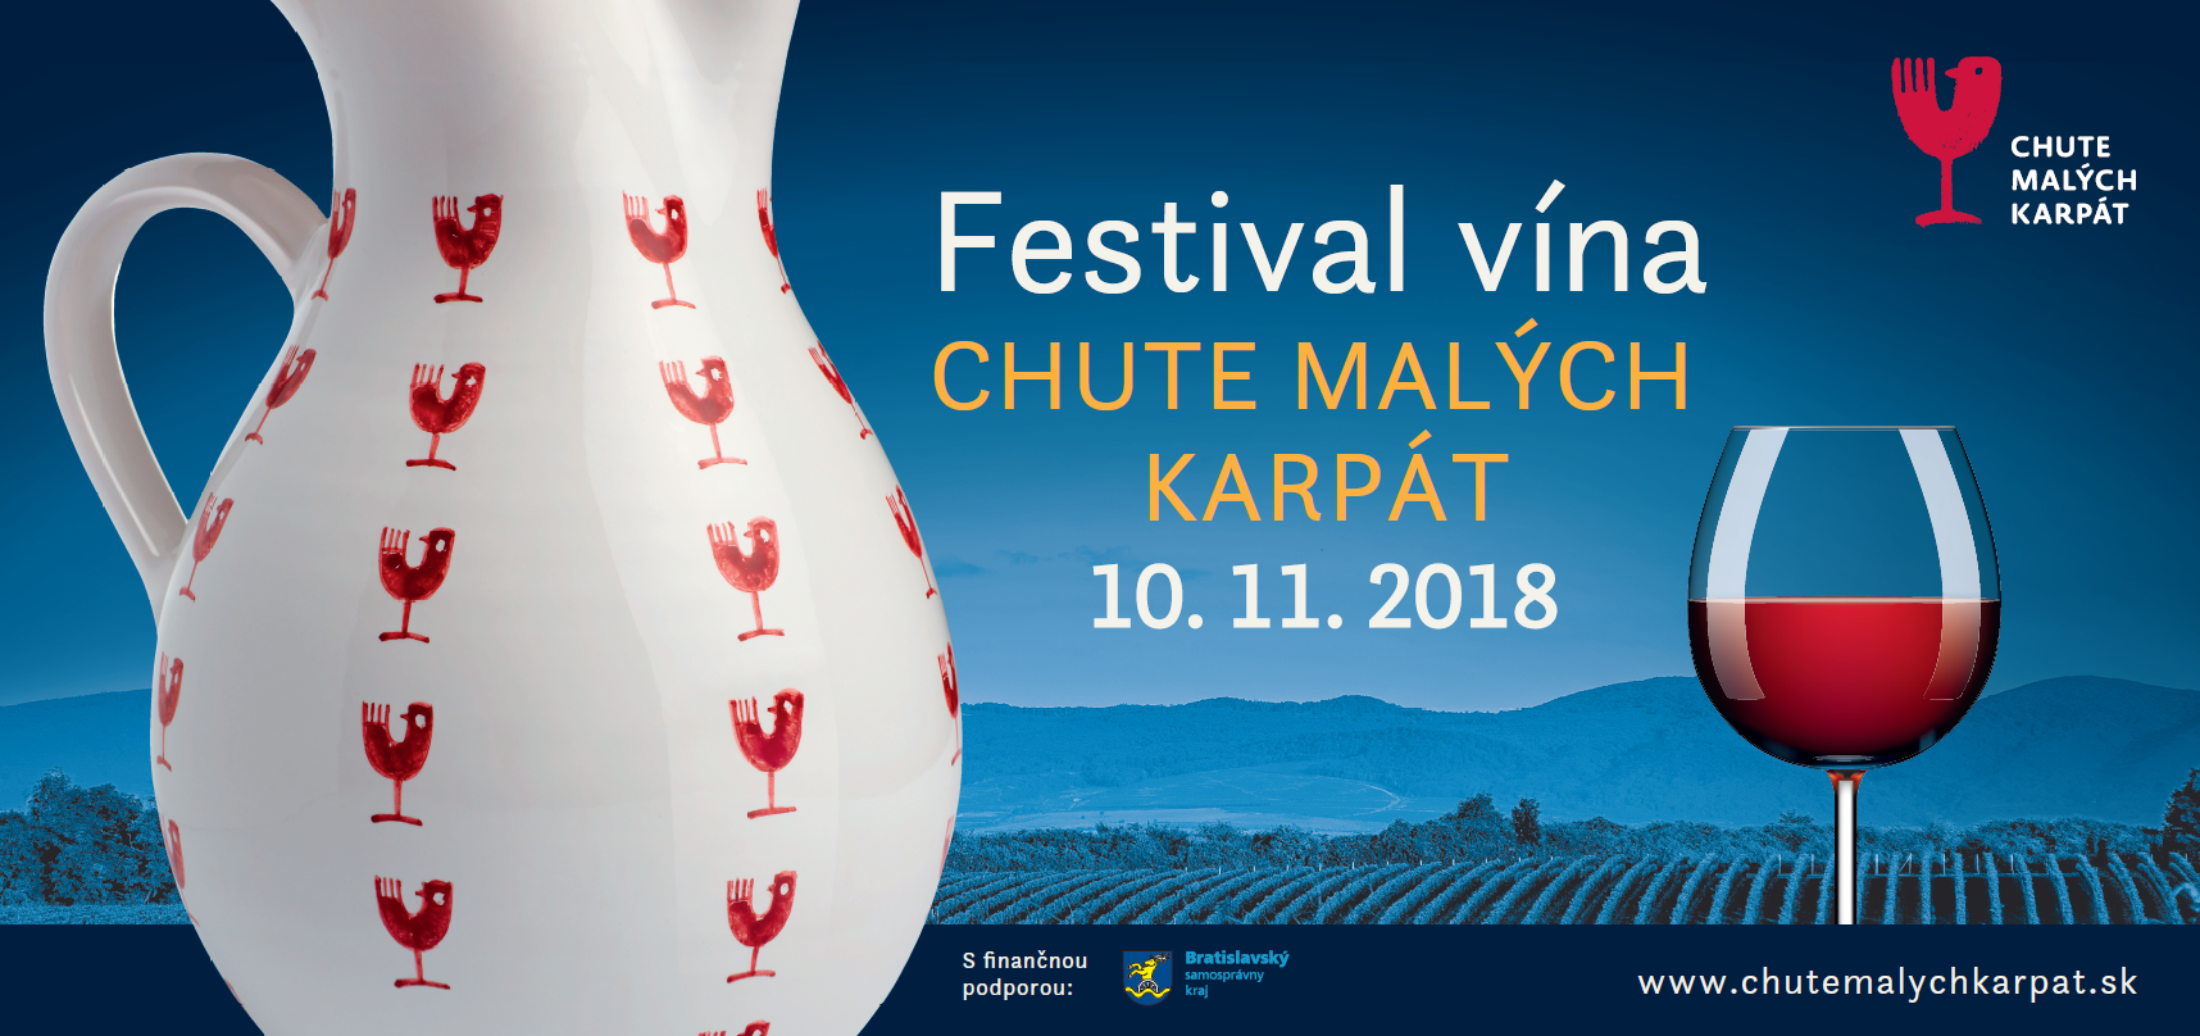 Jesenný festival Chute Malých Karpát privíta milovníkov vína i kultúry už po tretí raz